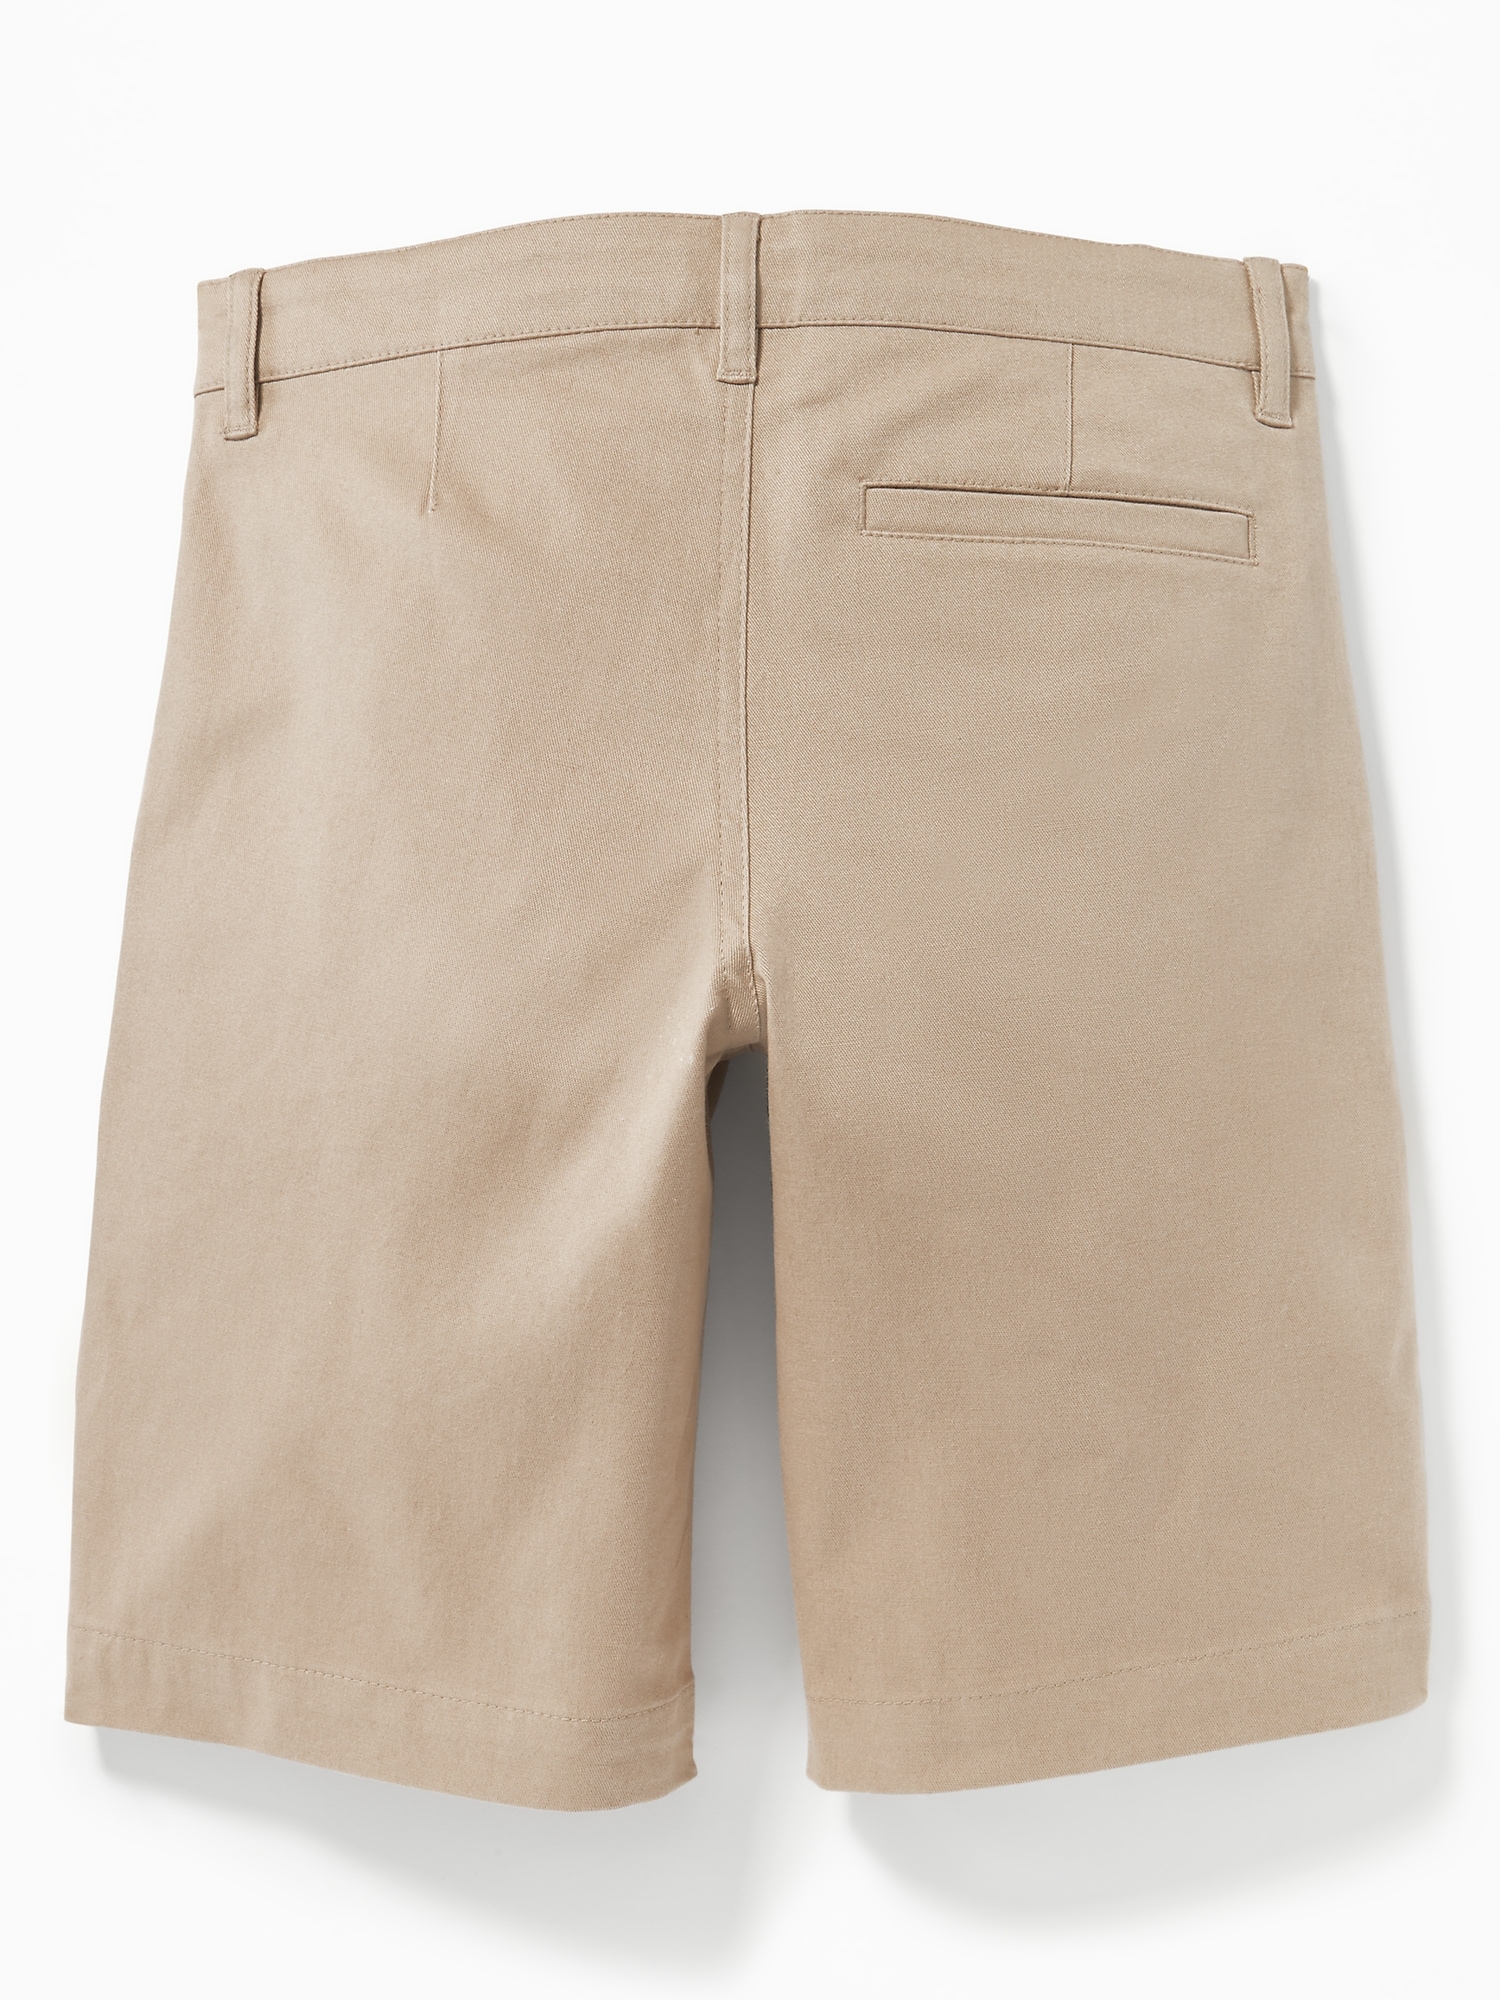 Old Navy Boys Uniform Khaki Adjustable Shorts Sz 16